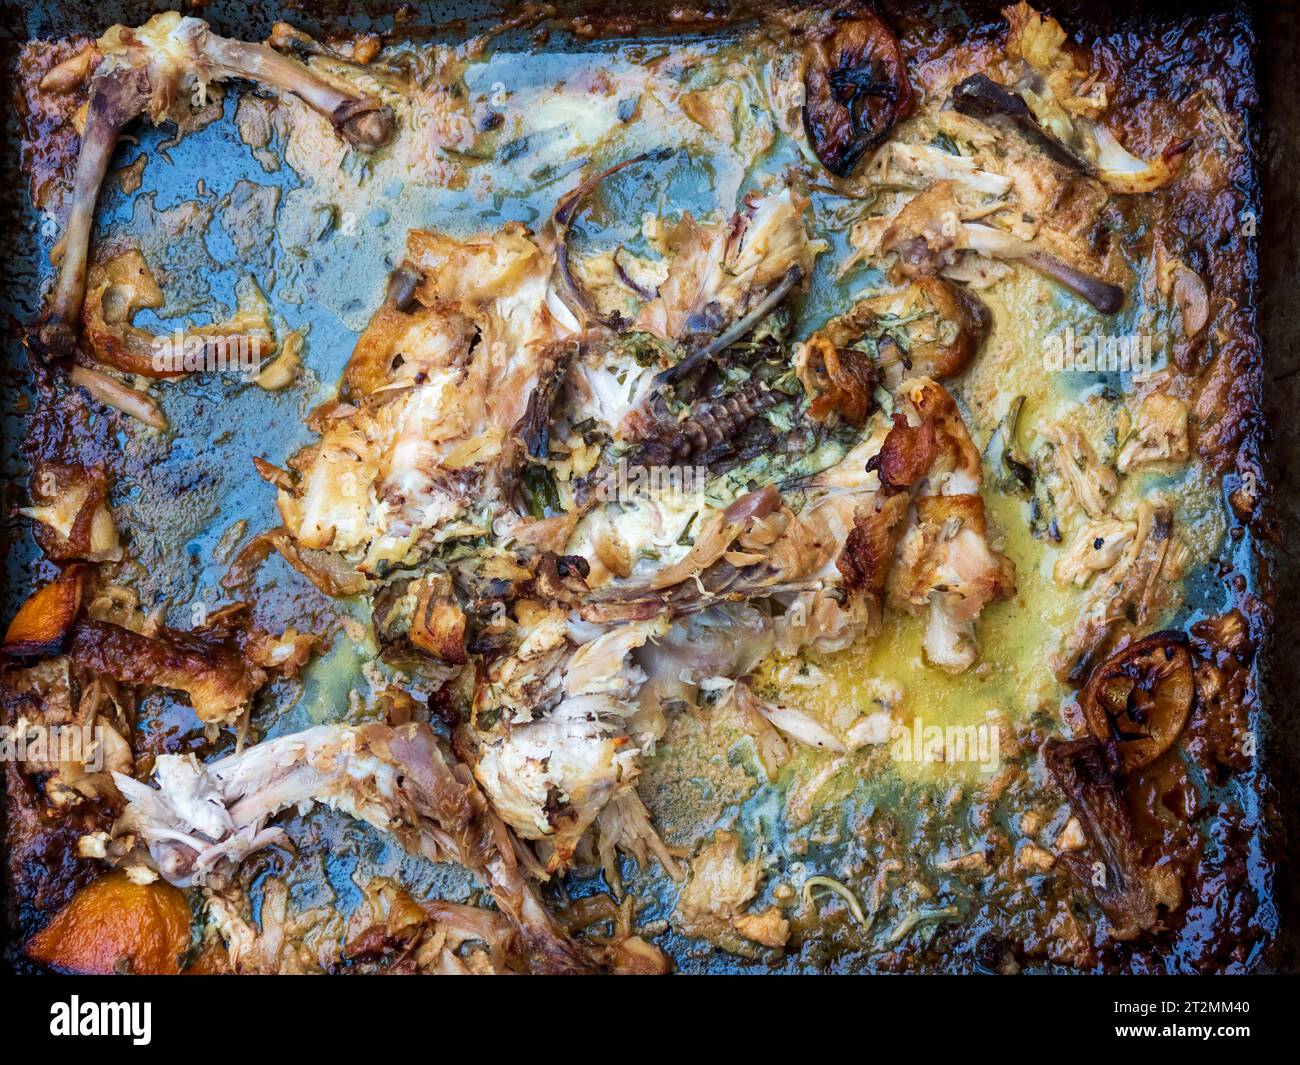 poulet rôti sur un plateau en métal après avoir mangé les restes de viande, les os de la peau et les graisses Banque D'Images